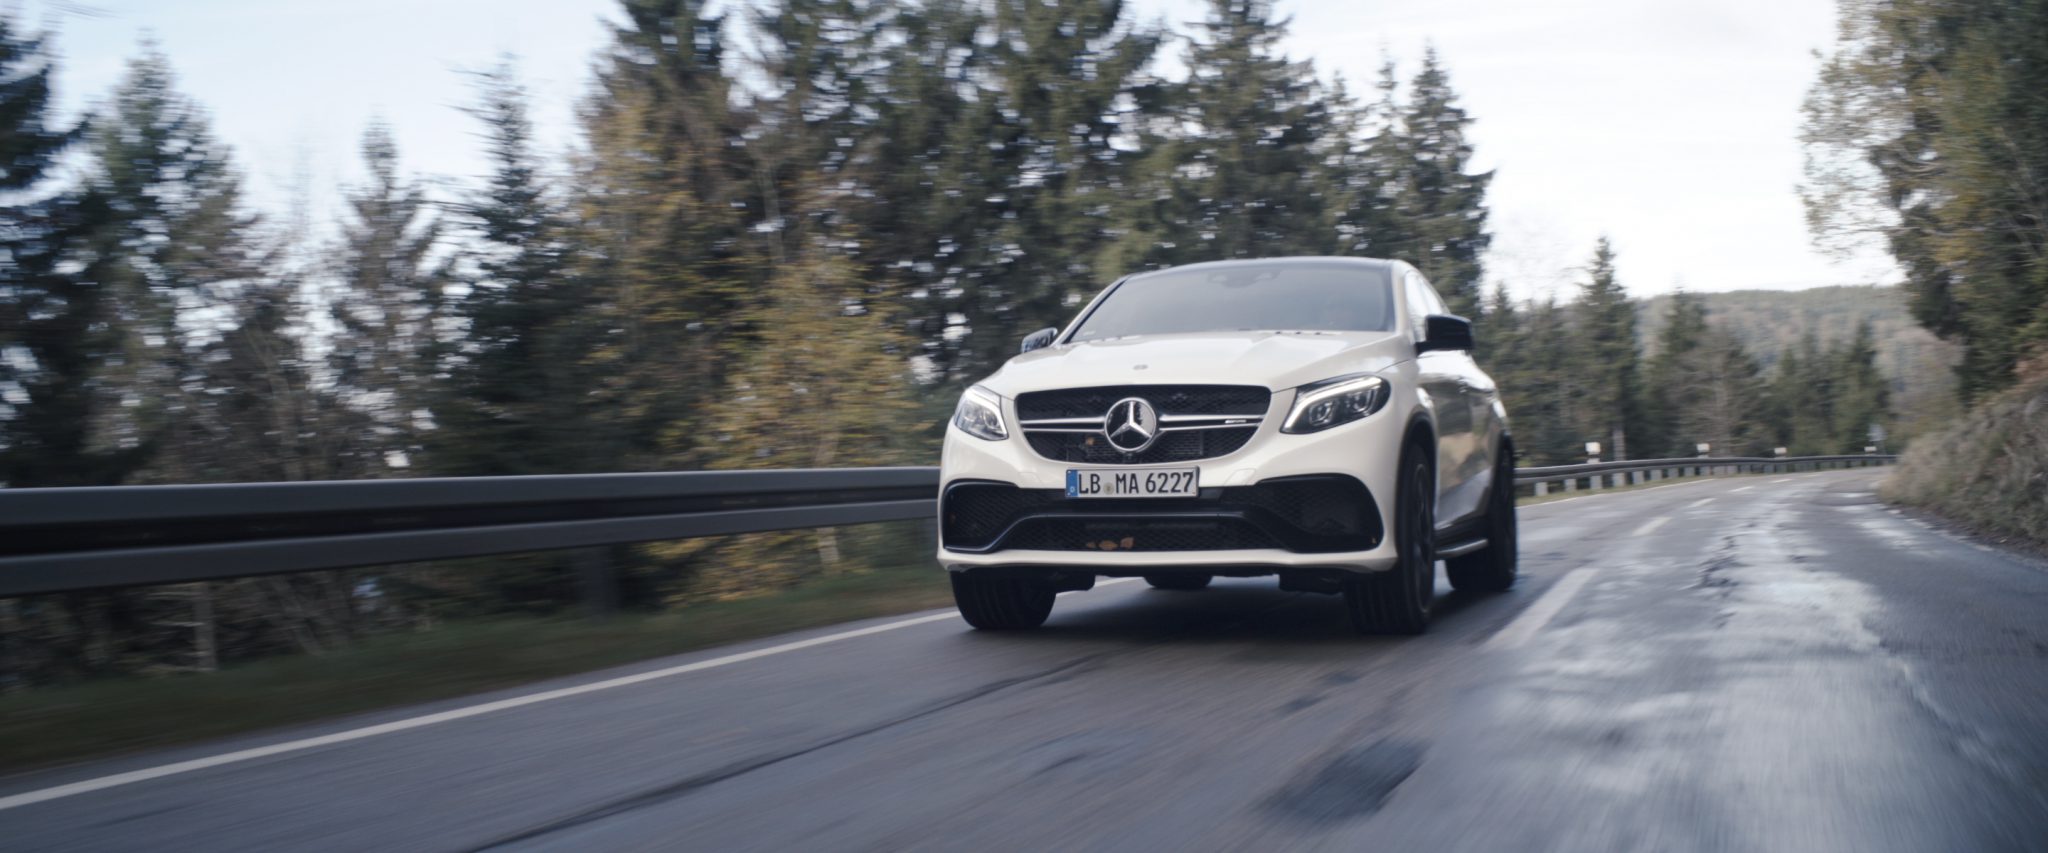 Mercedes-Benz car accelerates